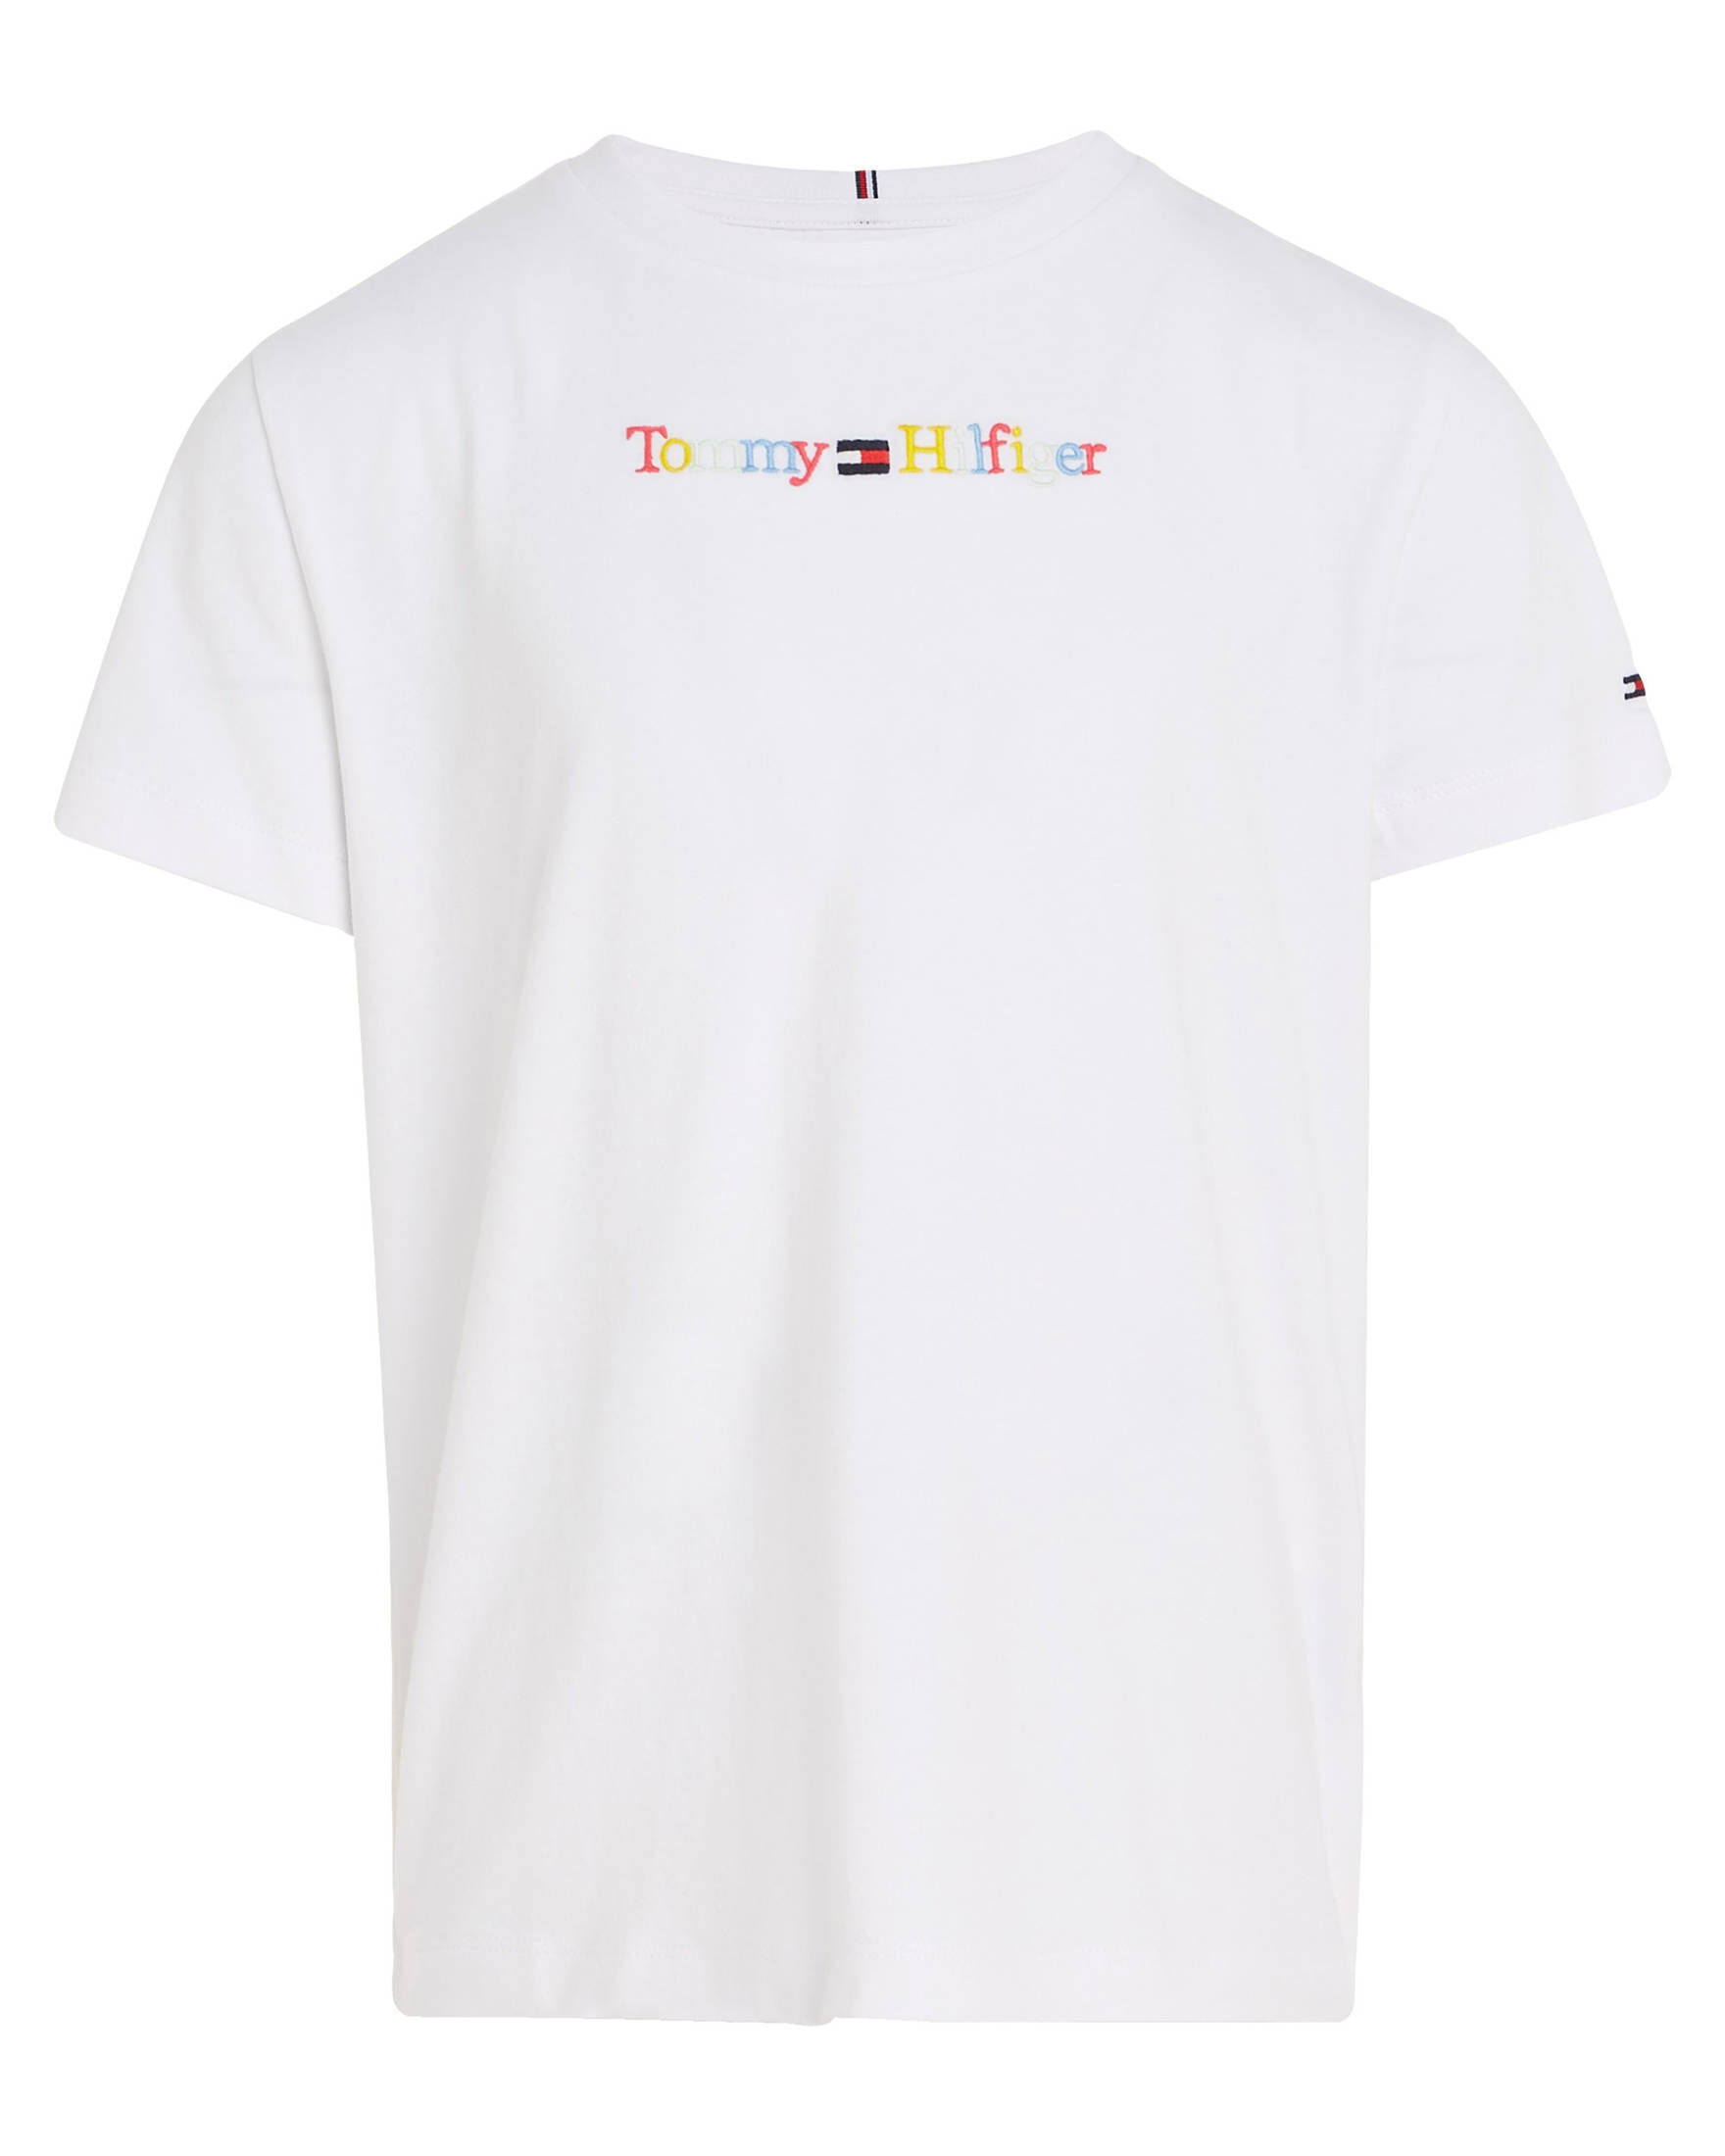 Tommy Hilfiger Kinder T-Shirt GRAPHIC kaufen engelhorn